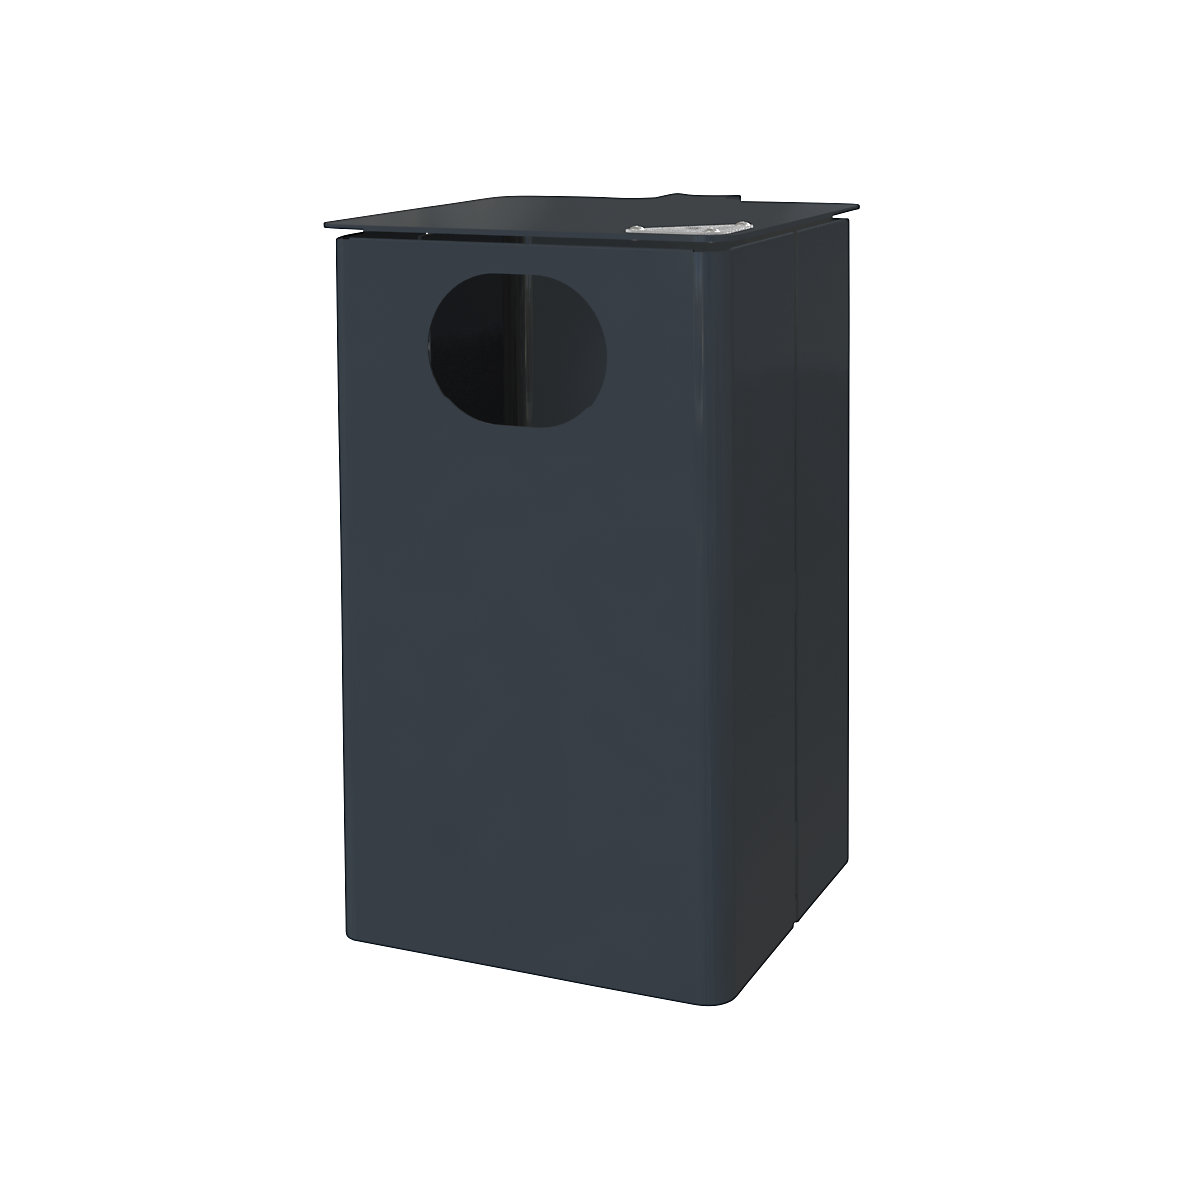 Außen-Abfallbehälter mit Ascher, Volumen 35 l, HxBxT 537 x 325 x 388 mm, anthrazitgrau, ab 3 Stk